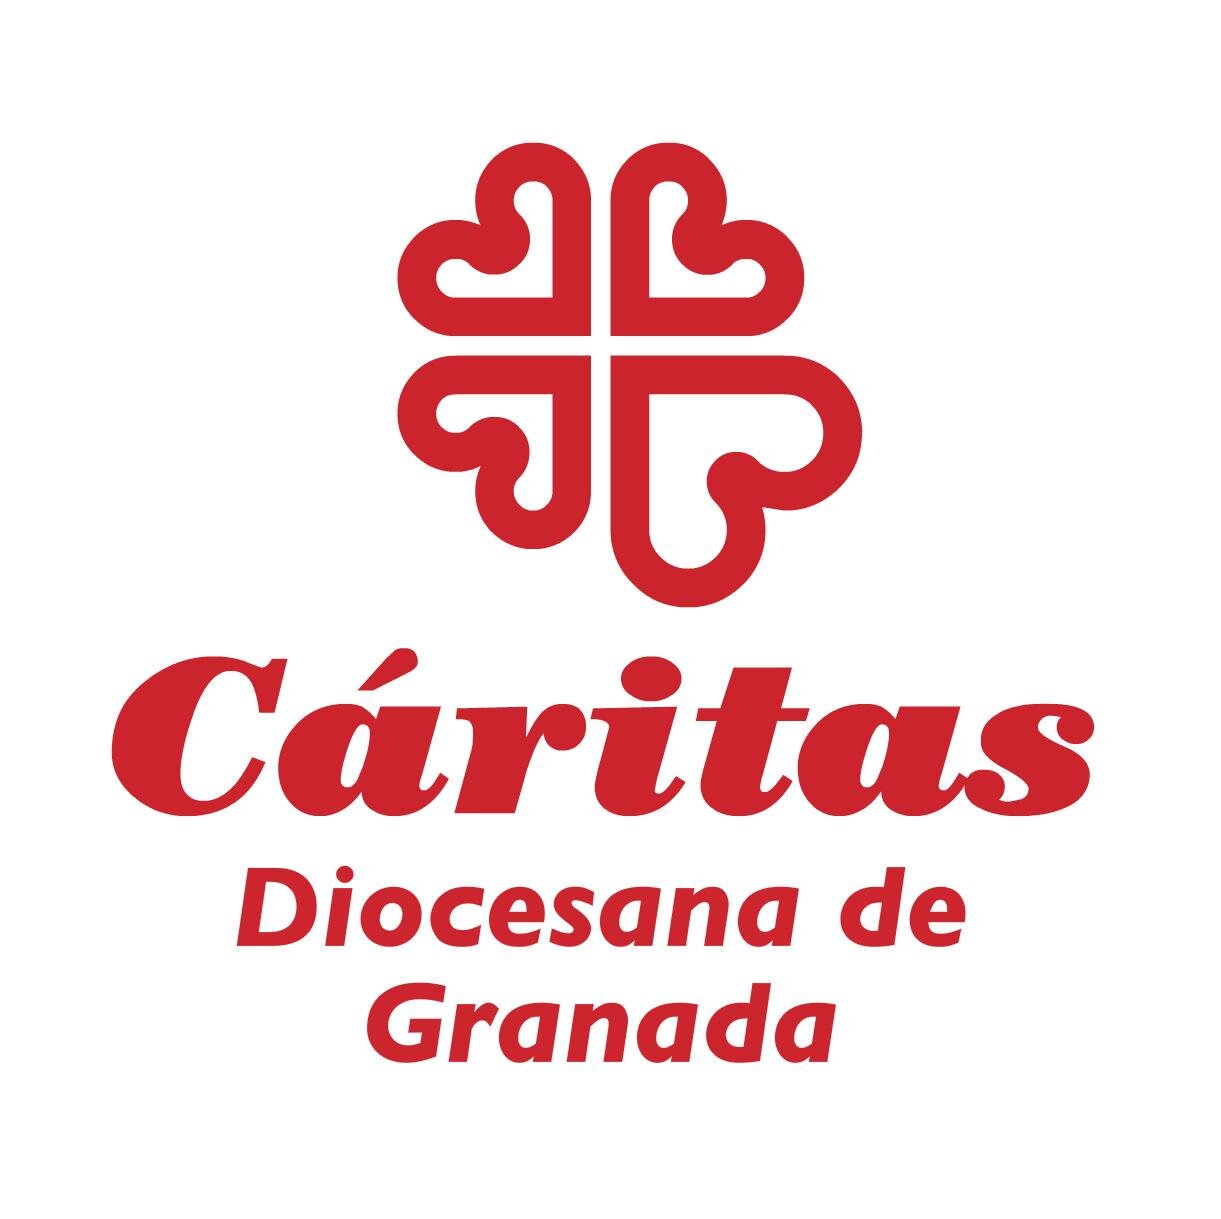 Twitter oficial de #Caritas Diocesana de #Granada, Institución de la Archidiócesis de Granada desarrollando la acción caritativa social de la #IglesiaCatolica